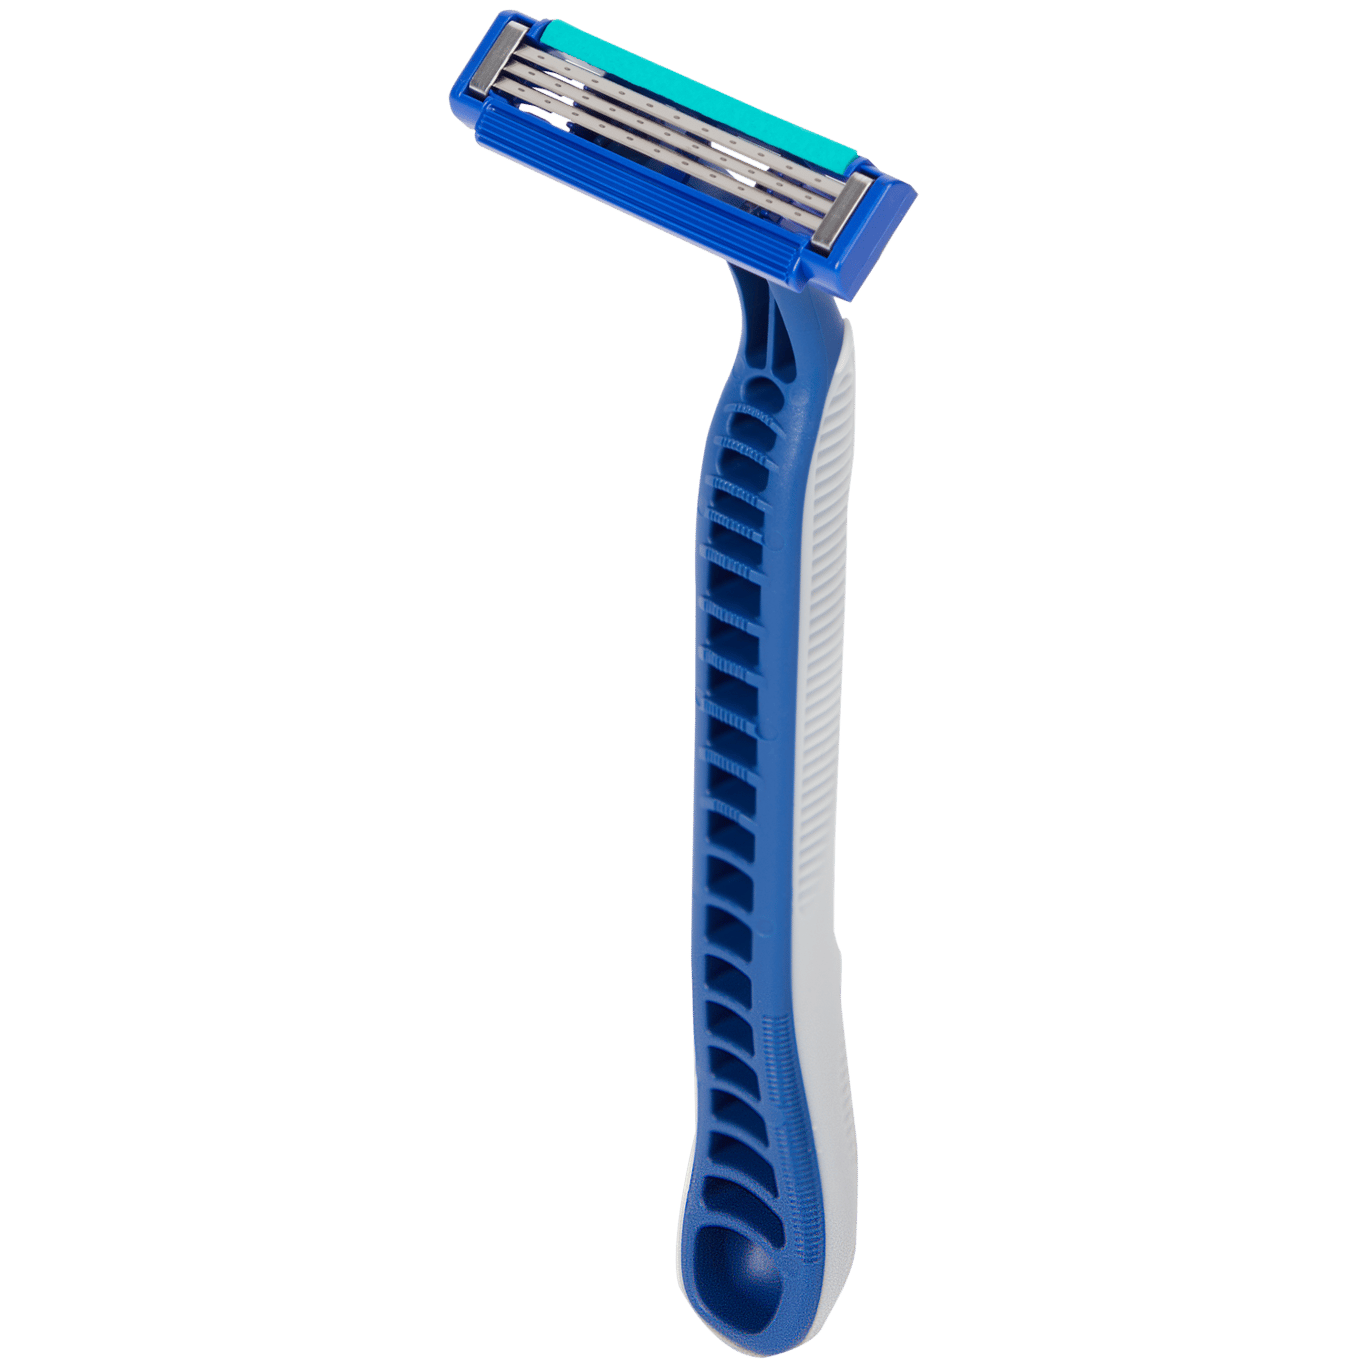 Lâminas de barbear Gillette Blue3 Simple